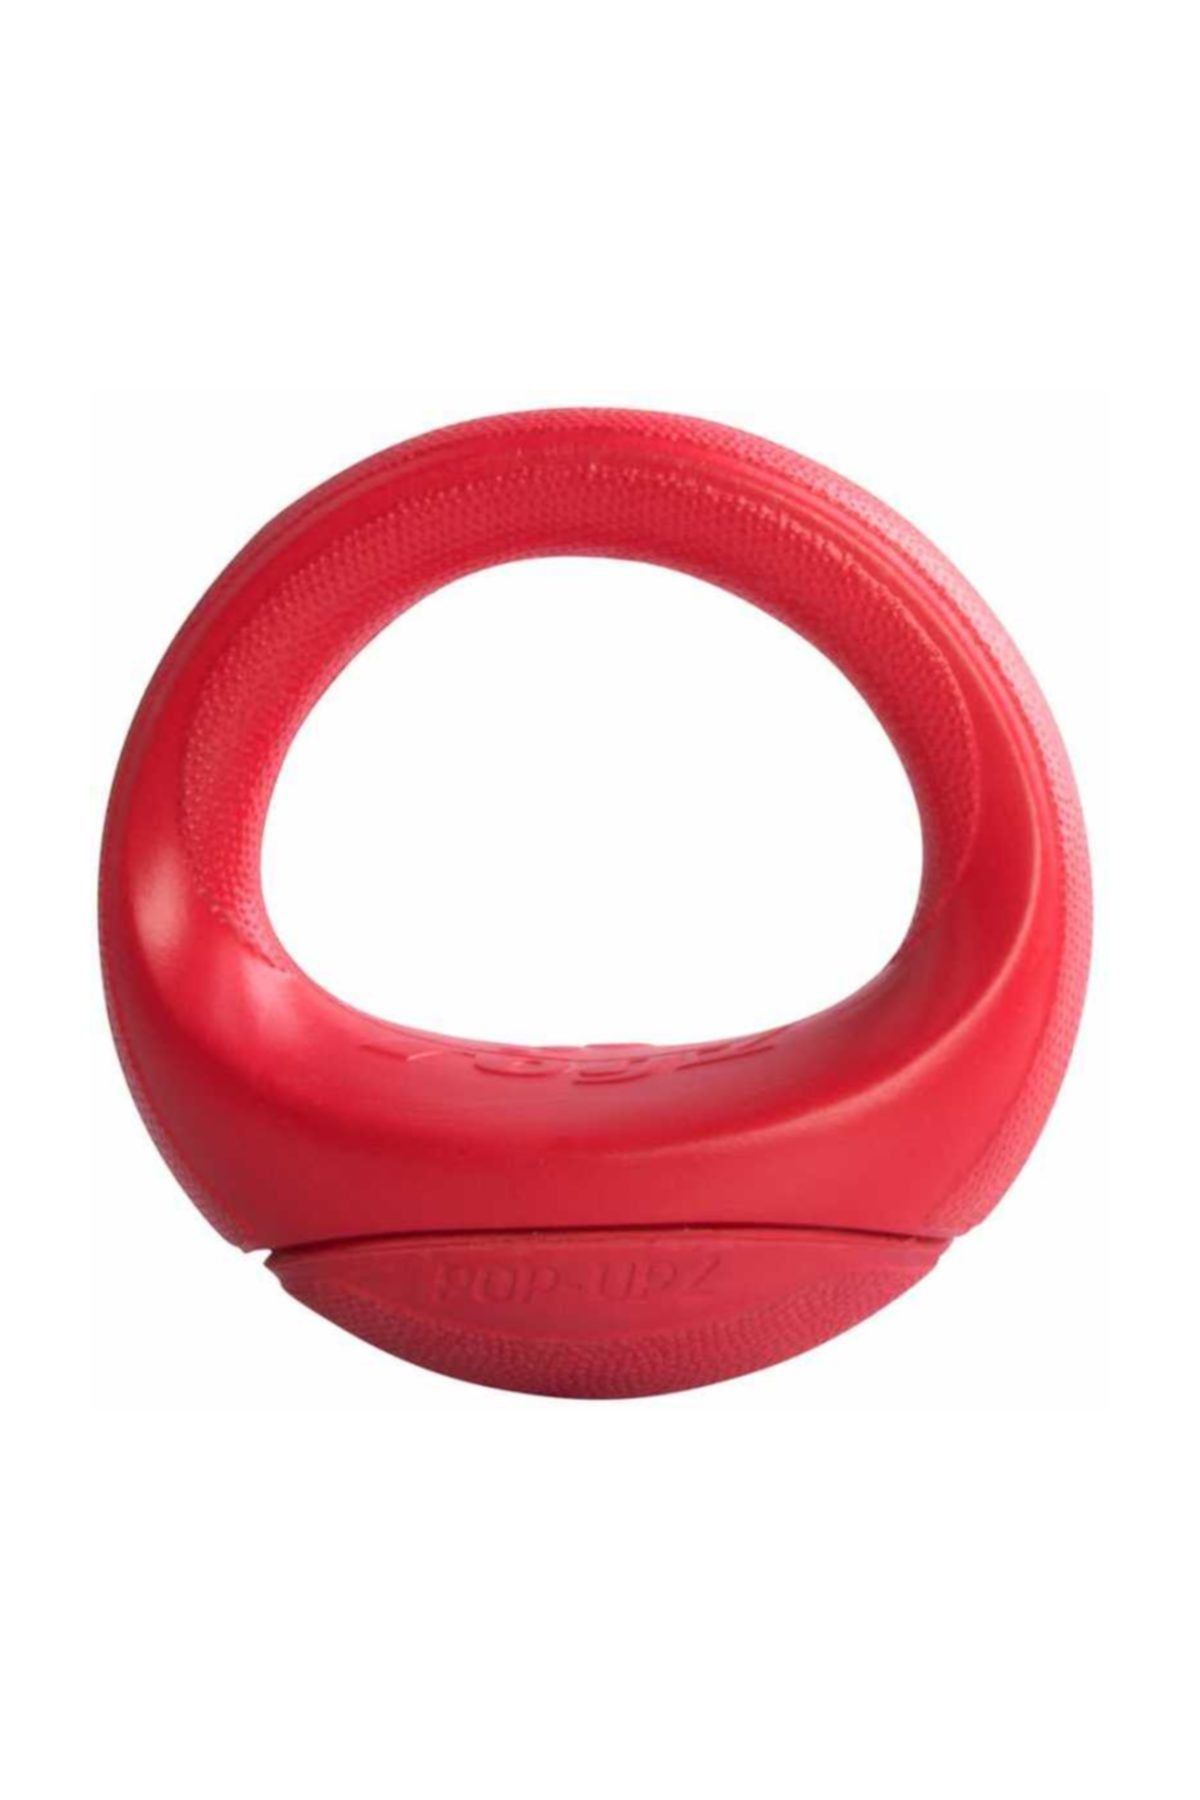 Rogz Köpek Oyuncak Batmaz Ağırlık Kırmızı Medium 14,5 cm